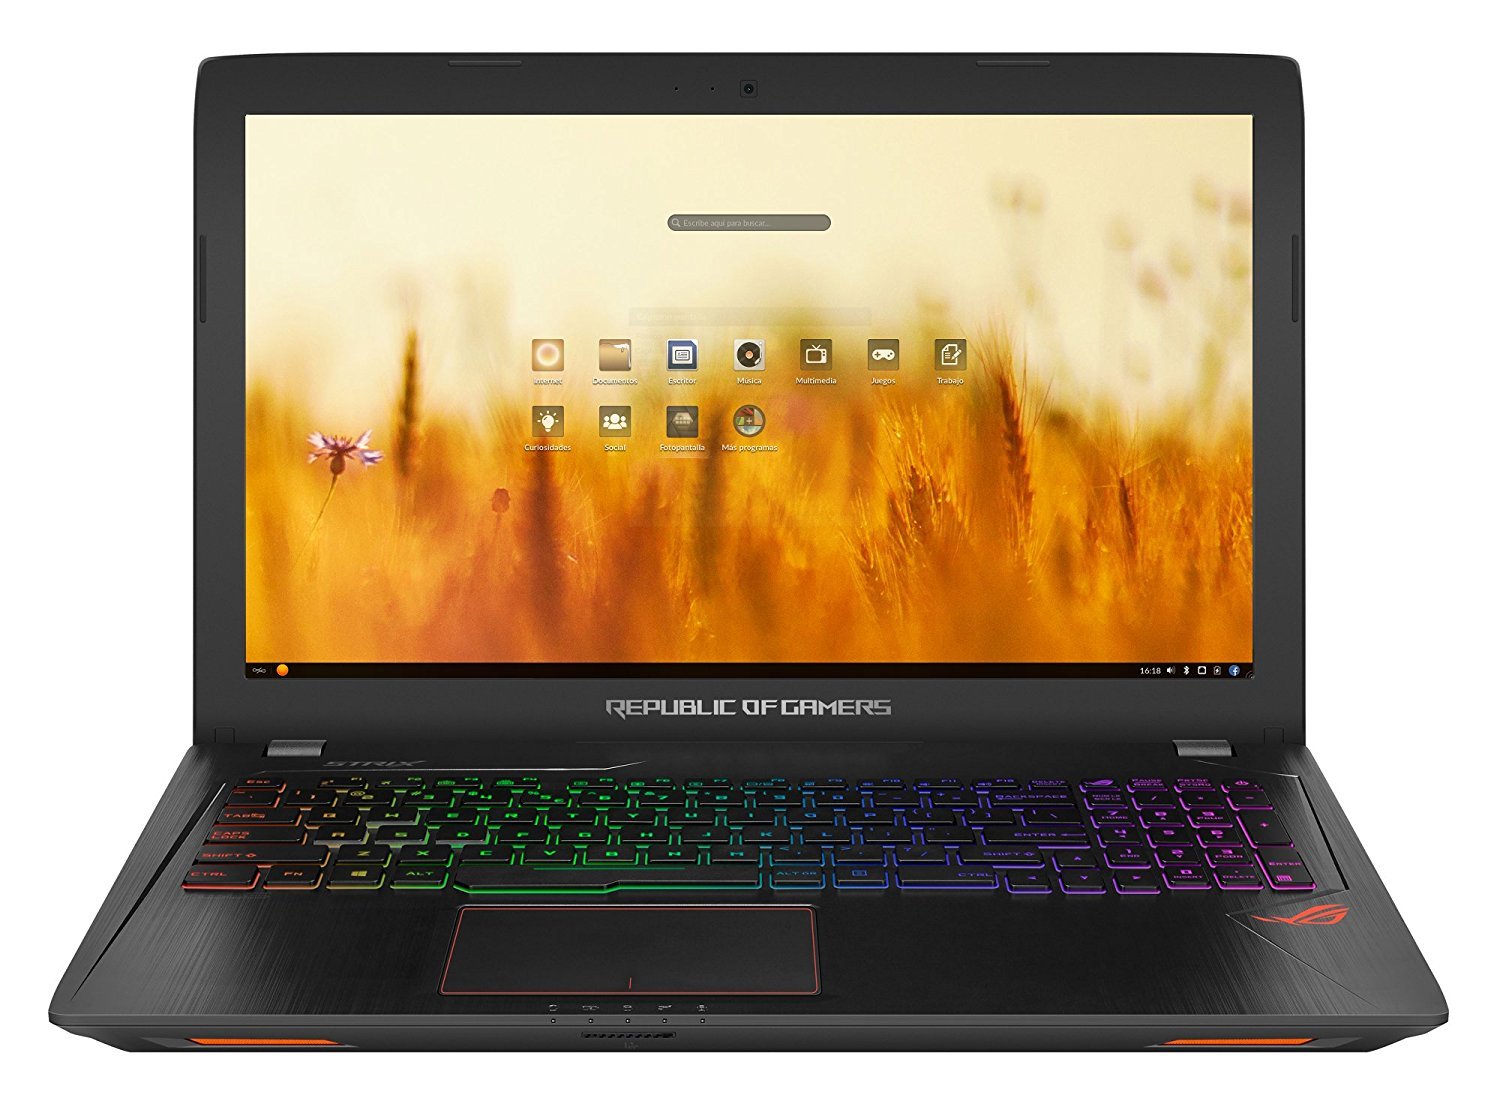 Análisis de La Laptop ASUS GL553VD-DM470 (ROG Strix GL553) para Gaming en 2018